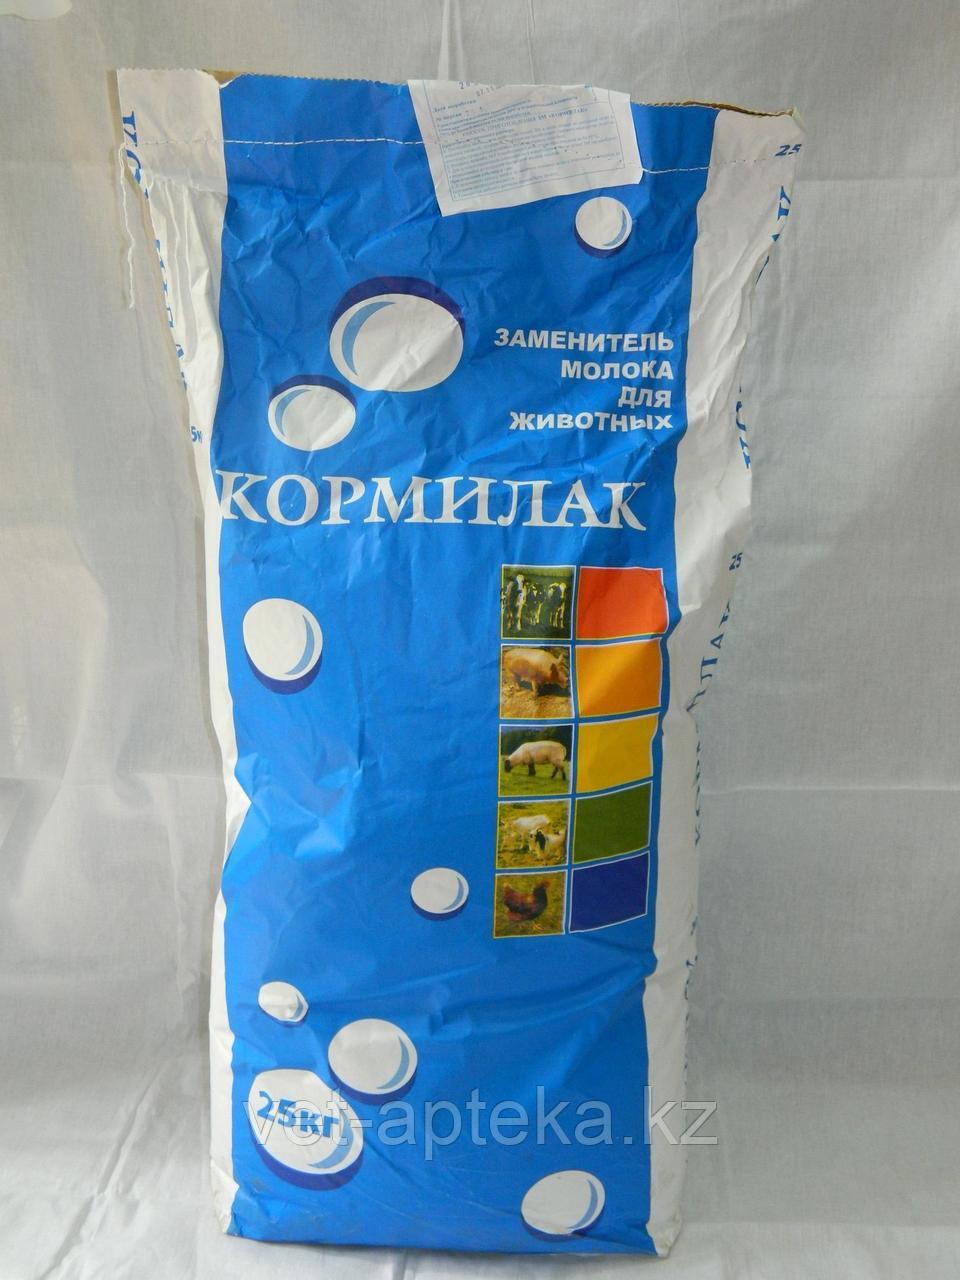 Заменитель цельного молока (ЗЦМ, сухое молоко) Кормилак 16%, мешок 25 кг